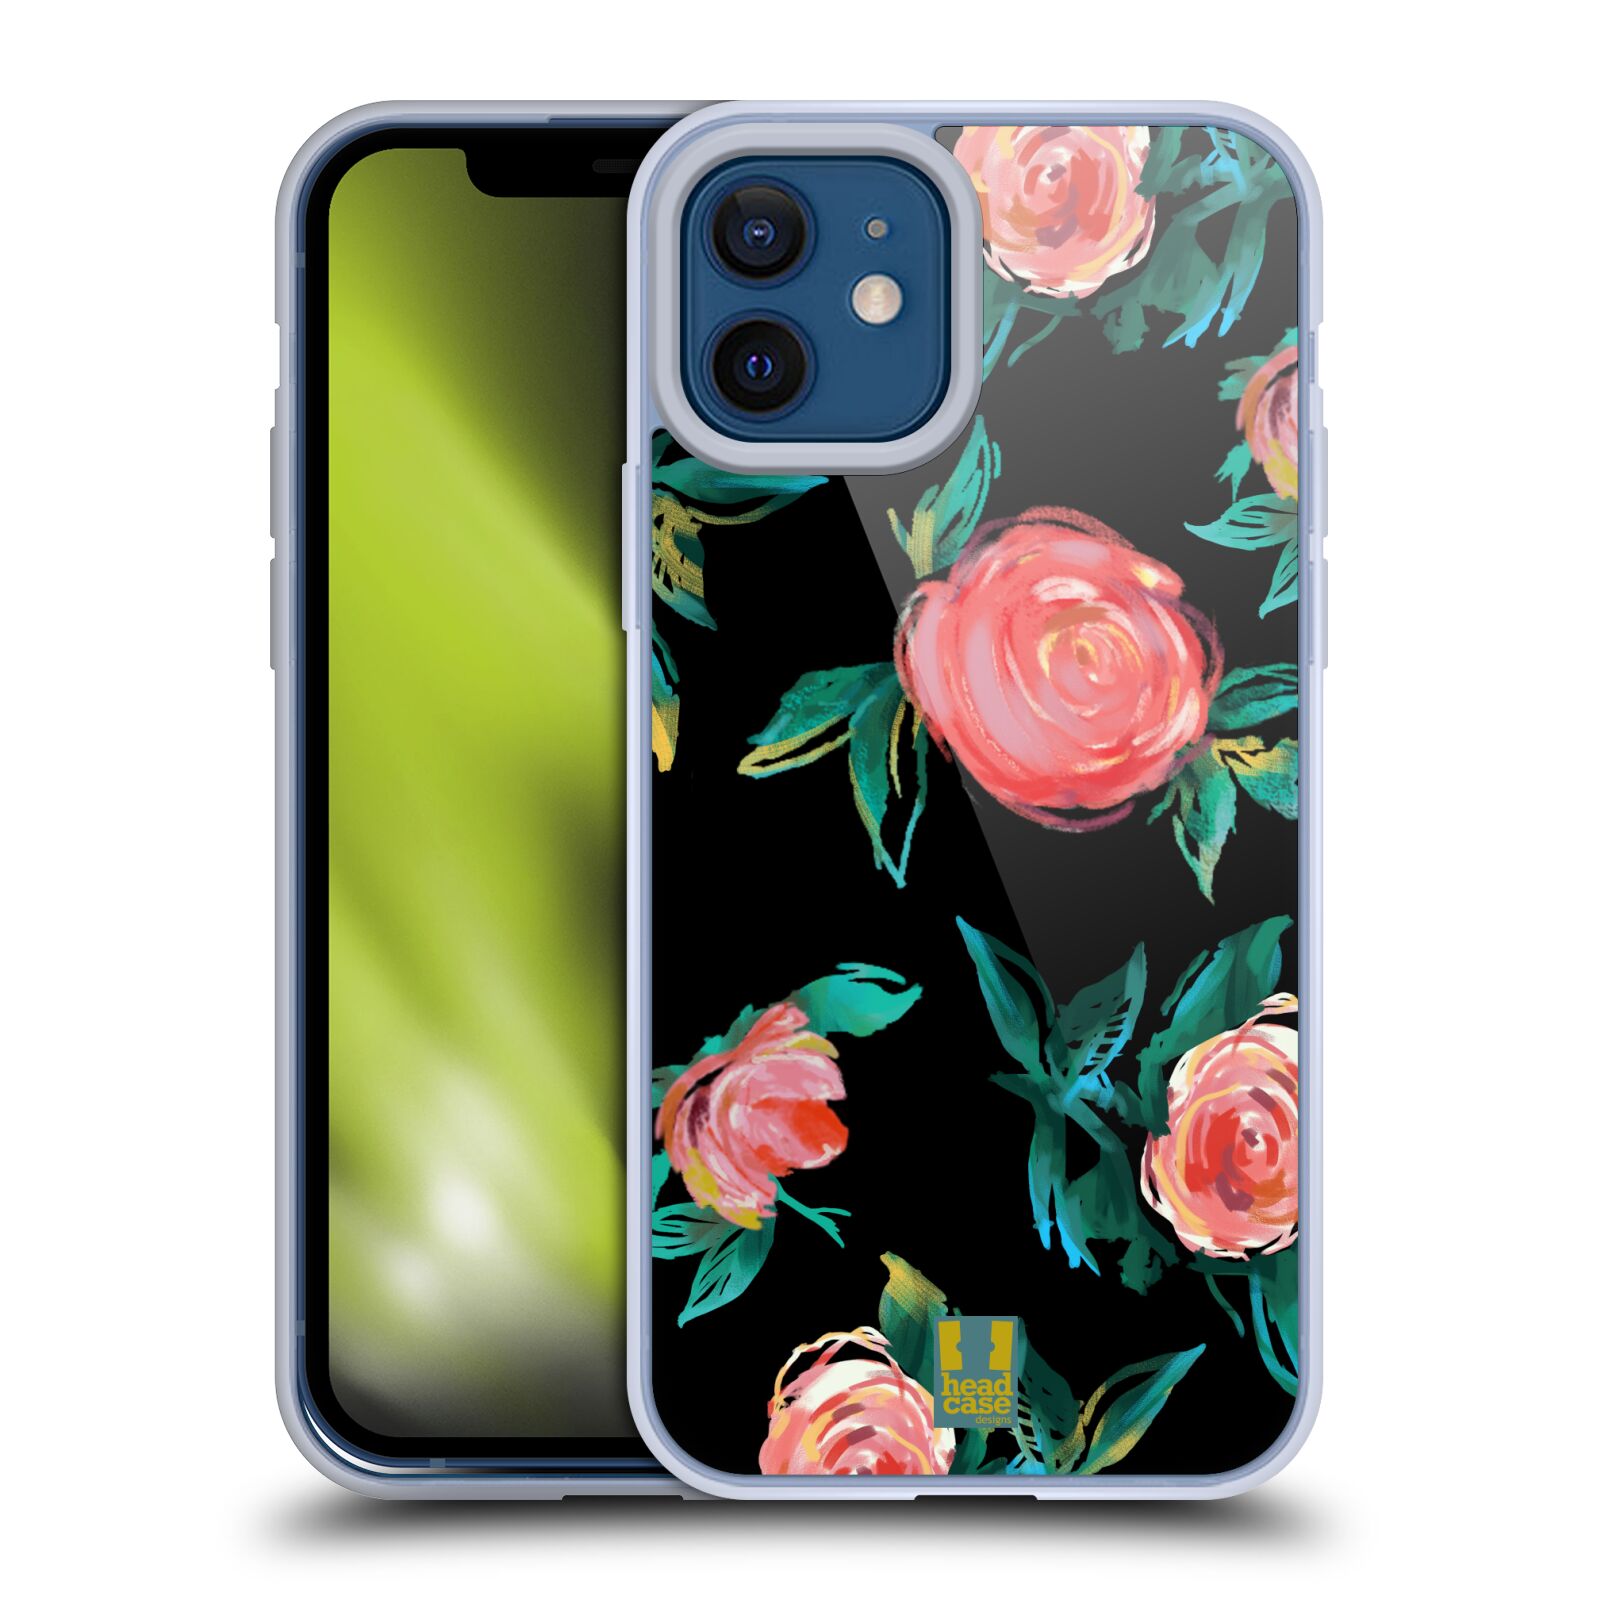 Silikonový obal na mobil Apple iPhone 12 / iPhone 12 Pro - HEAD CASE - Květy - růže na černém pozadí